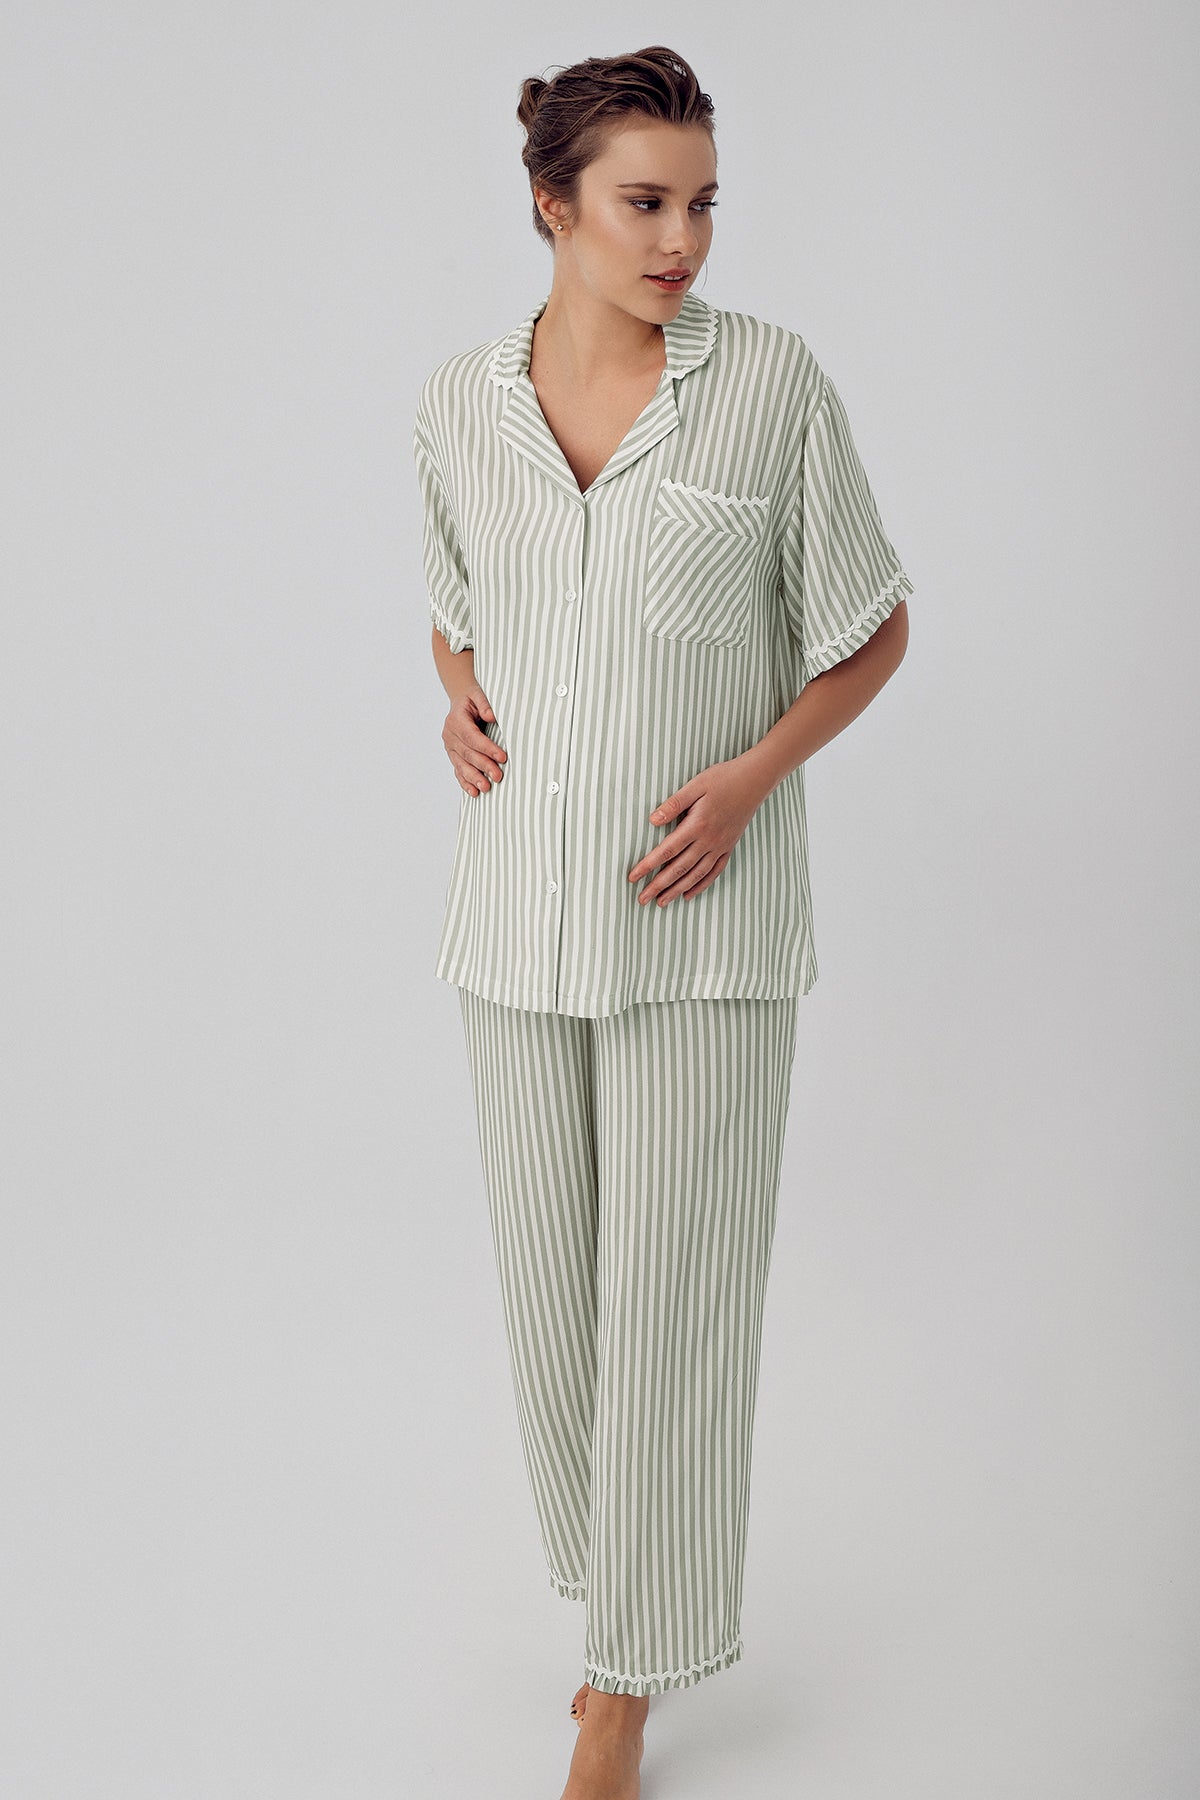 Striped Maternity & Nursing Pajamas Green - 16203